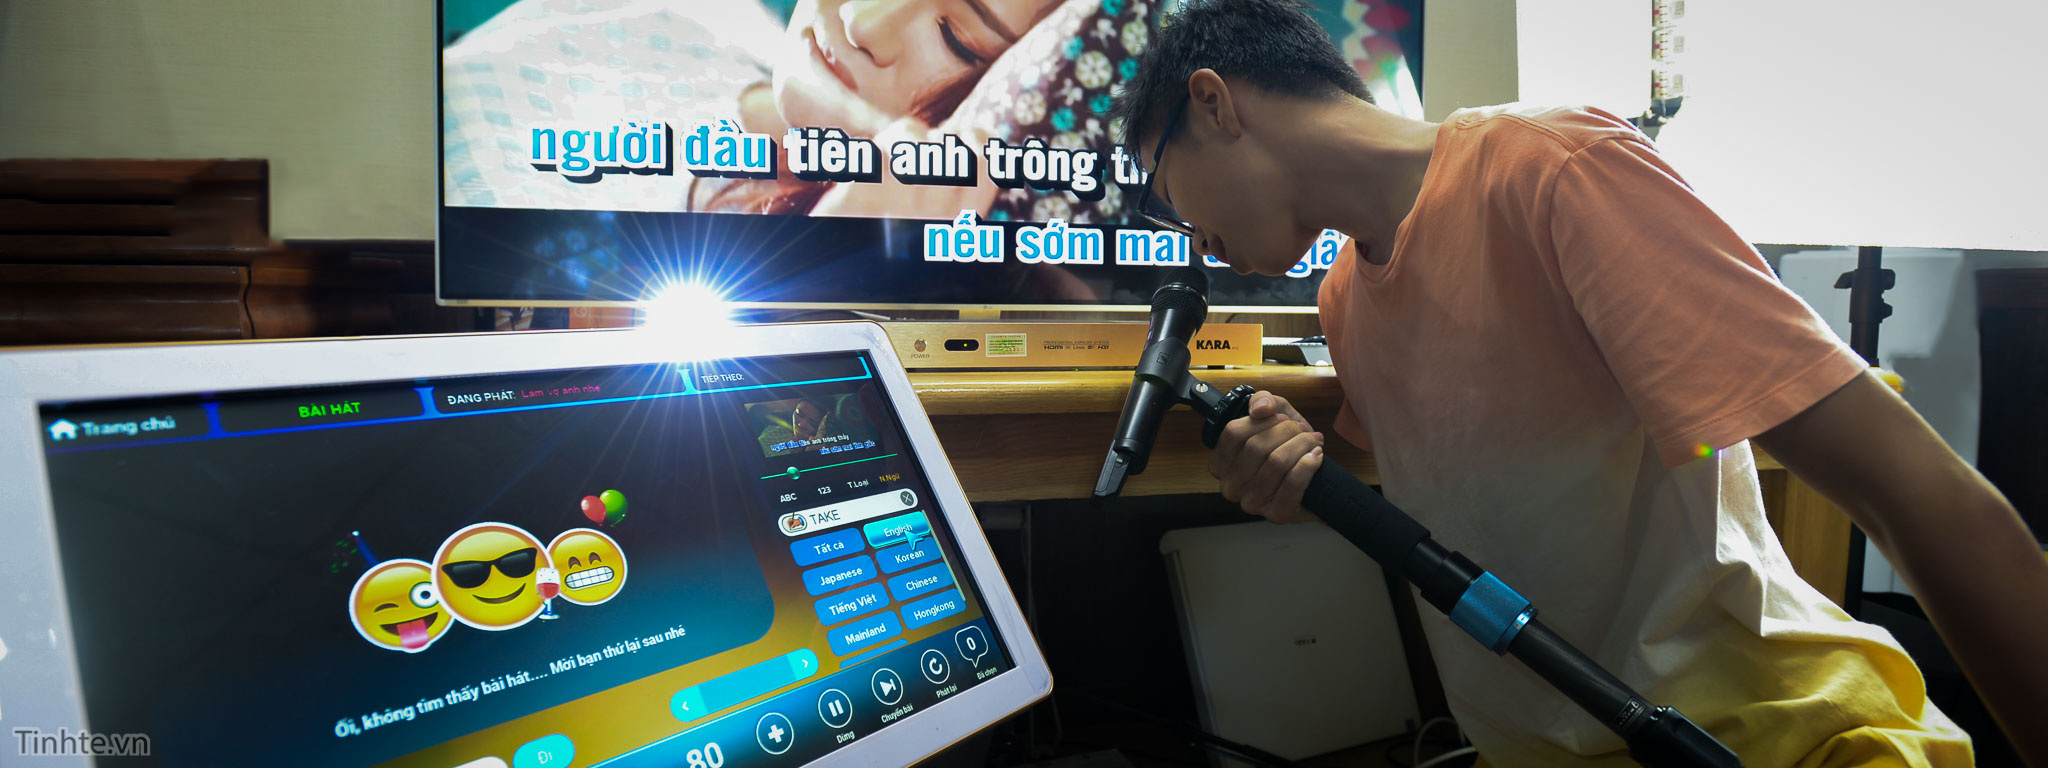 Trên tay đầu karaoke Kara M10: phát triển tại Việt Nam, đơn giản, dễ xài, màn hình cảm ứng tiện dụng